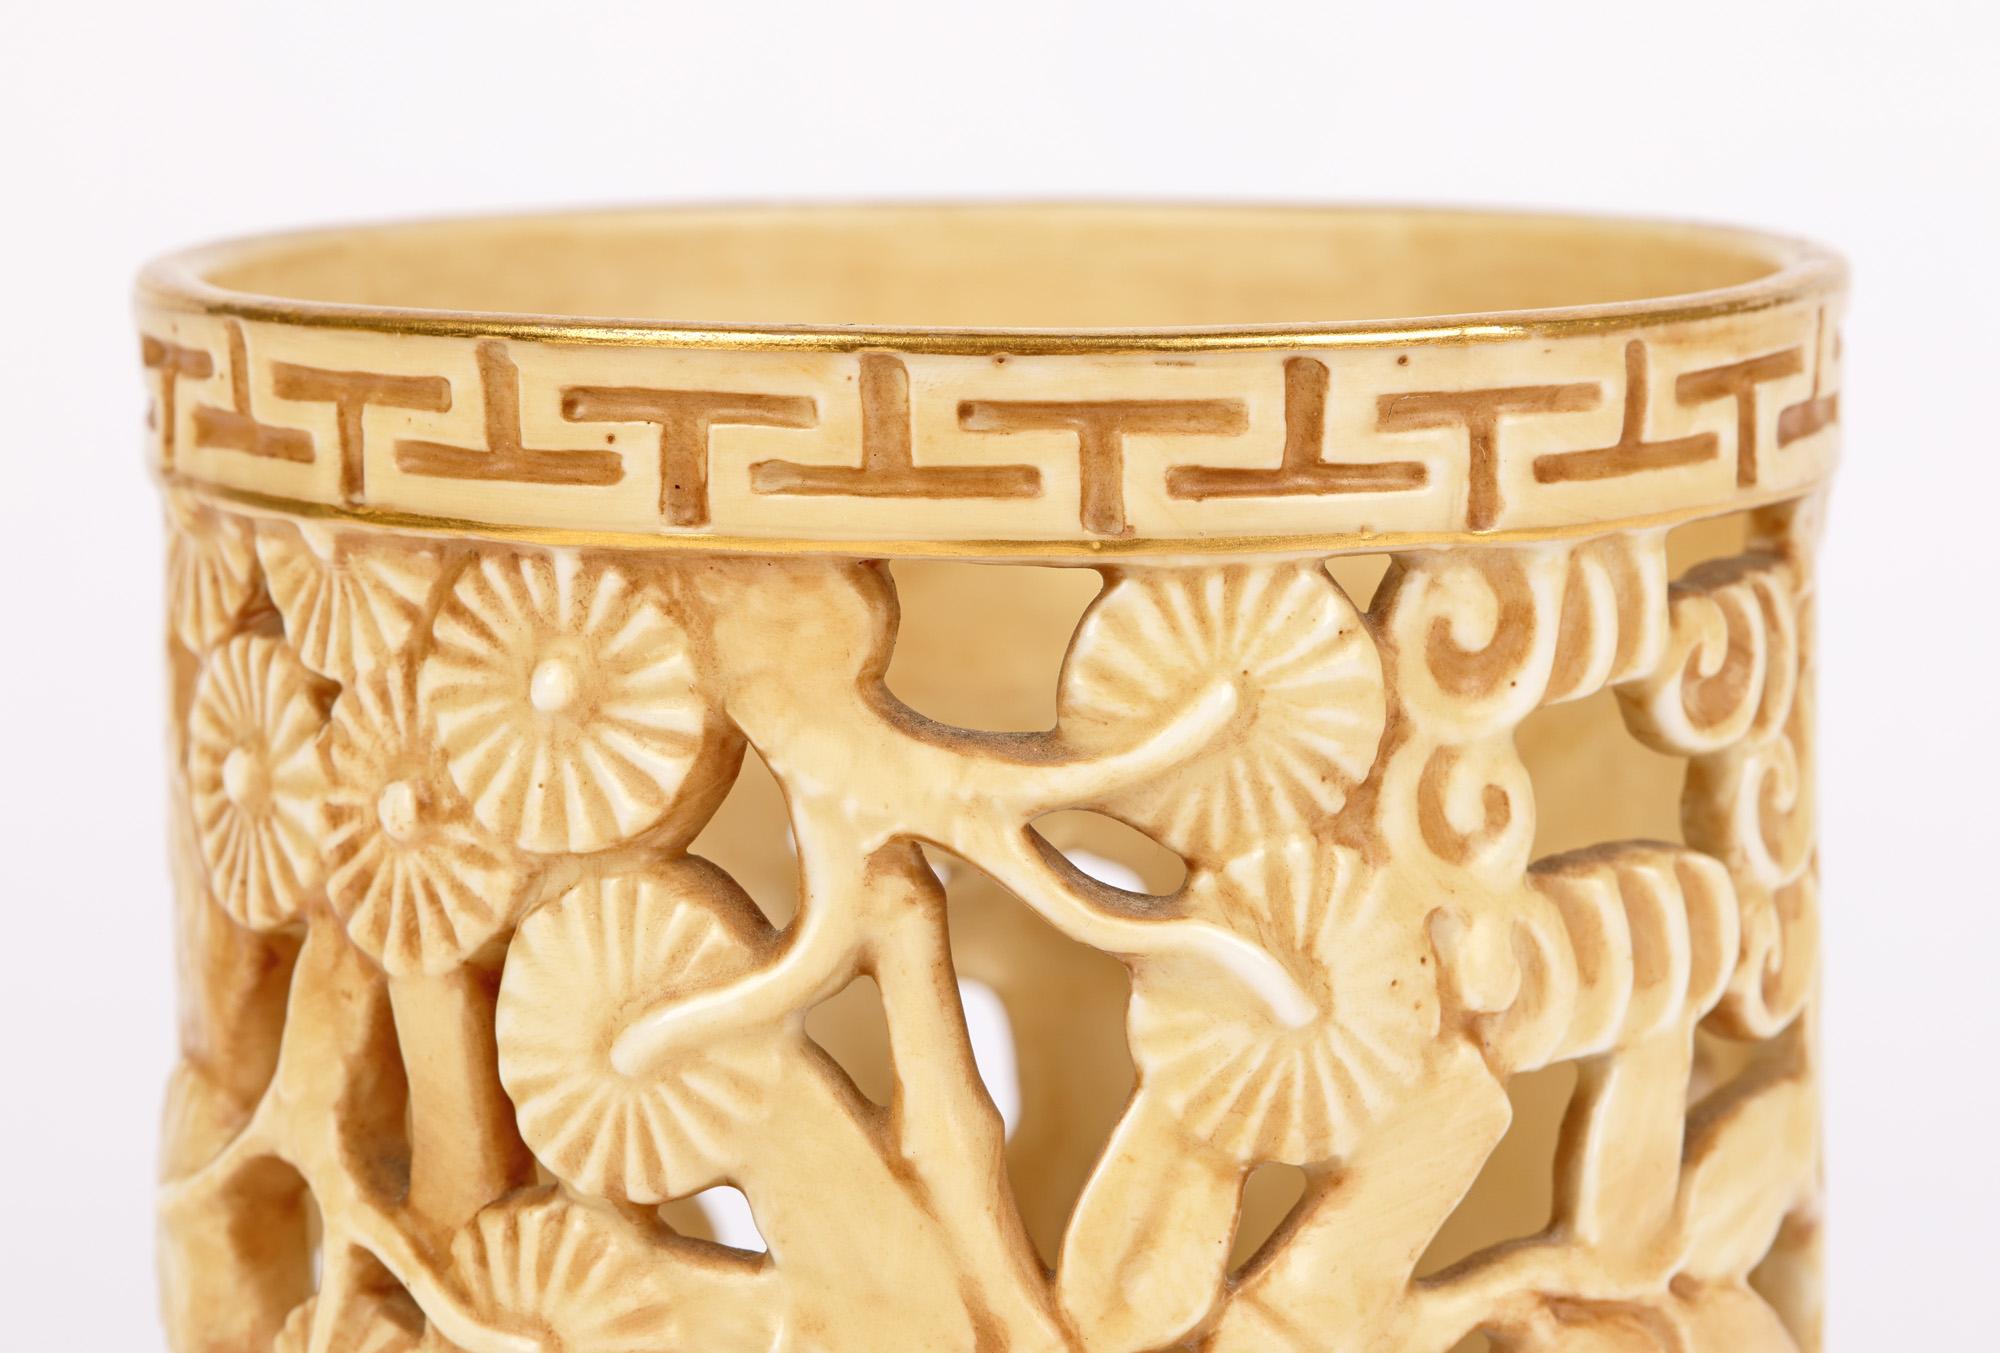 Eine ungewöhnliche Royal Worcester 'Aesthetic Movement' Porzellan Vase mit durchbrochenem Ausguss, dekoriert im orientalischen Stil mit einem Gebäude inmitten von Bambus, datiert 1907. Die leicht gearbeitete Vase ist von breiter zylindrischer Form